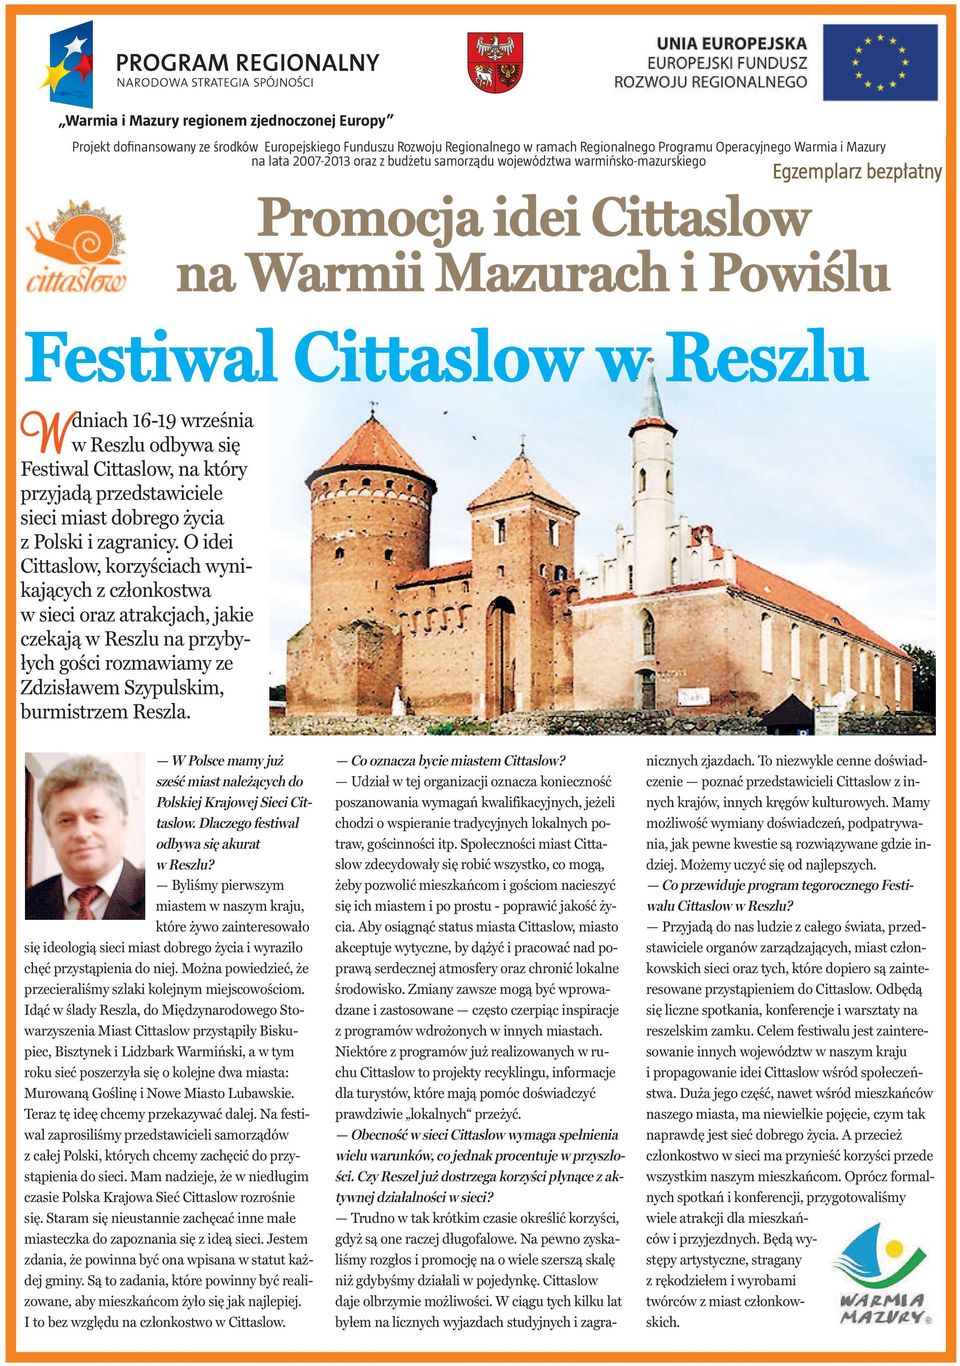 się Festiwal Cittaslow, na który przyjadą przedstawiciele sieci miast dobrego życia z Polski i zagranicy.